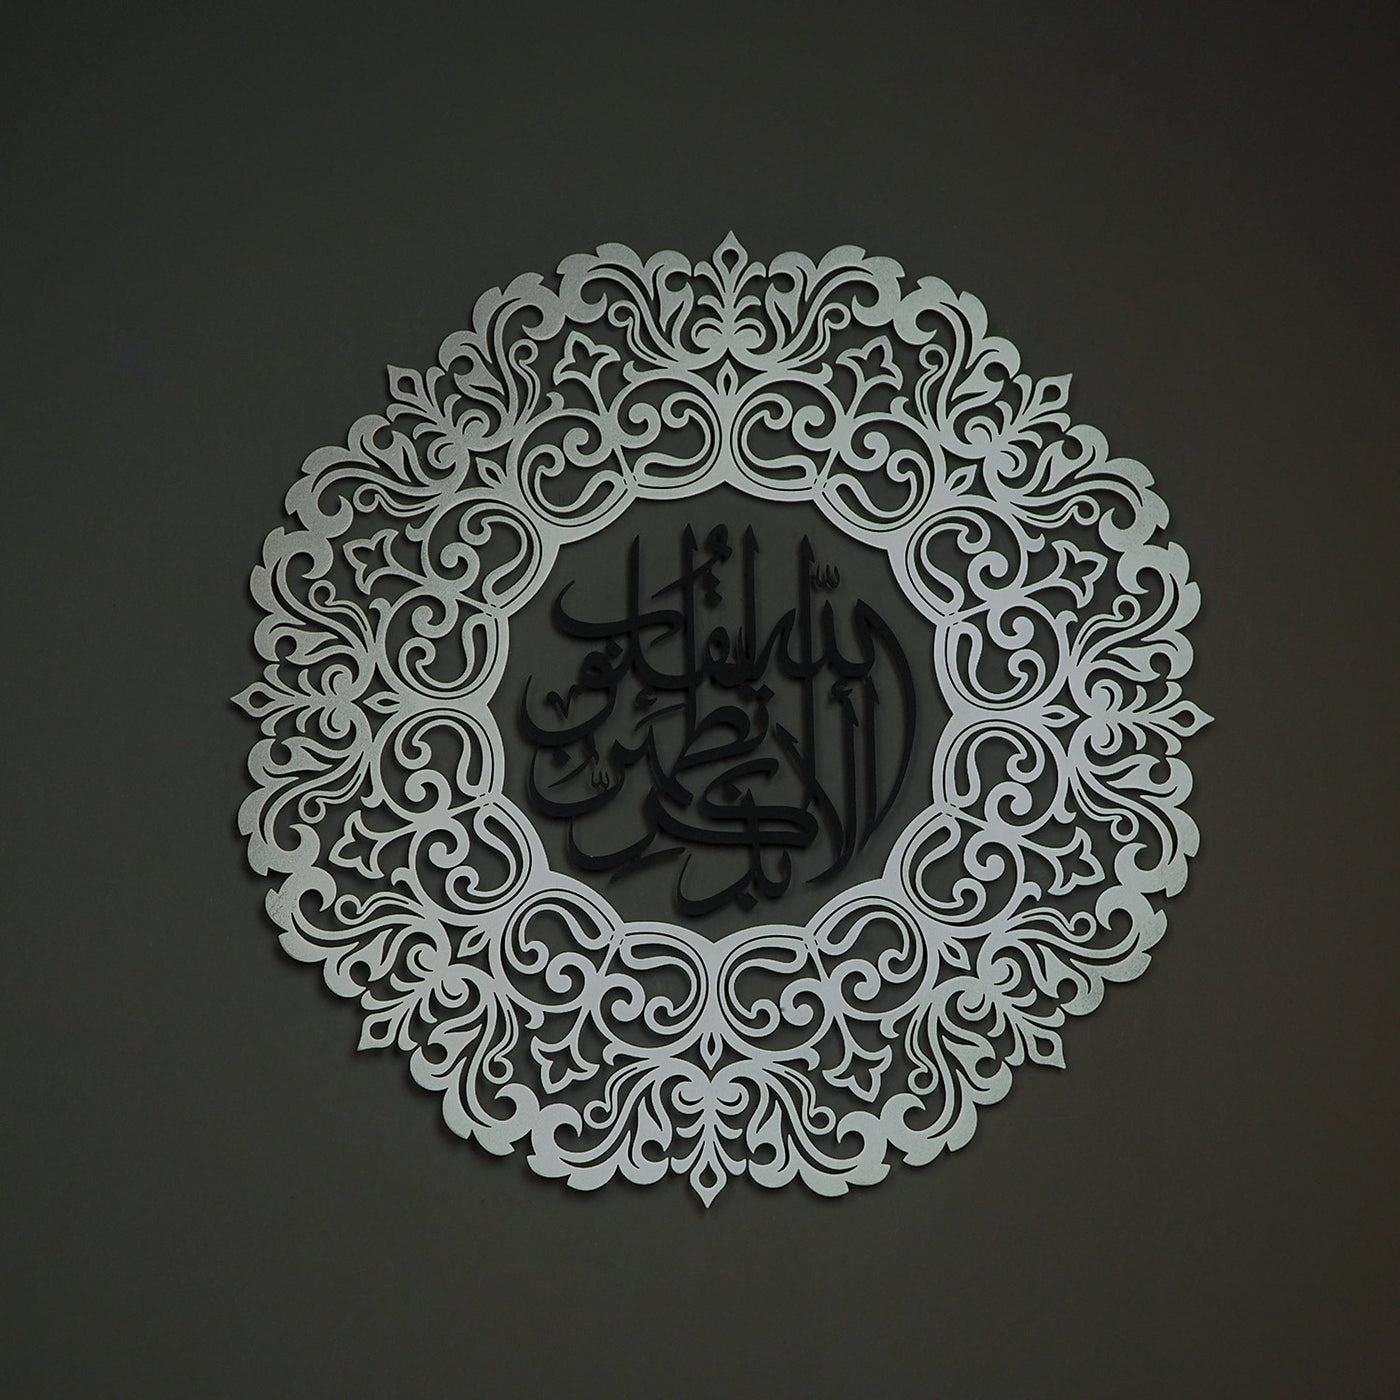 "Bilesiniz ki gönüller ancak Allah’ı zikrederek huzura kavuşur." - Ra'd Suresi Yazılı 3 Boyutlu Metal Duvar Tablosu (2 Parça) - WAM142